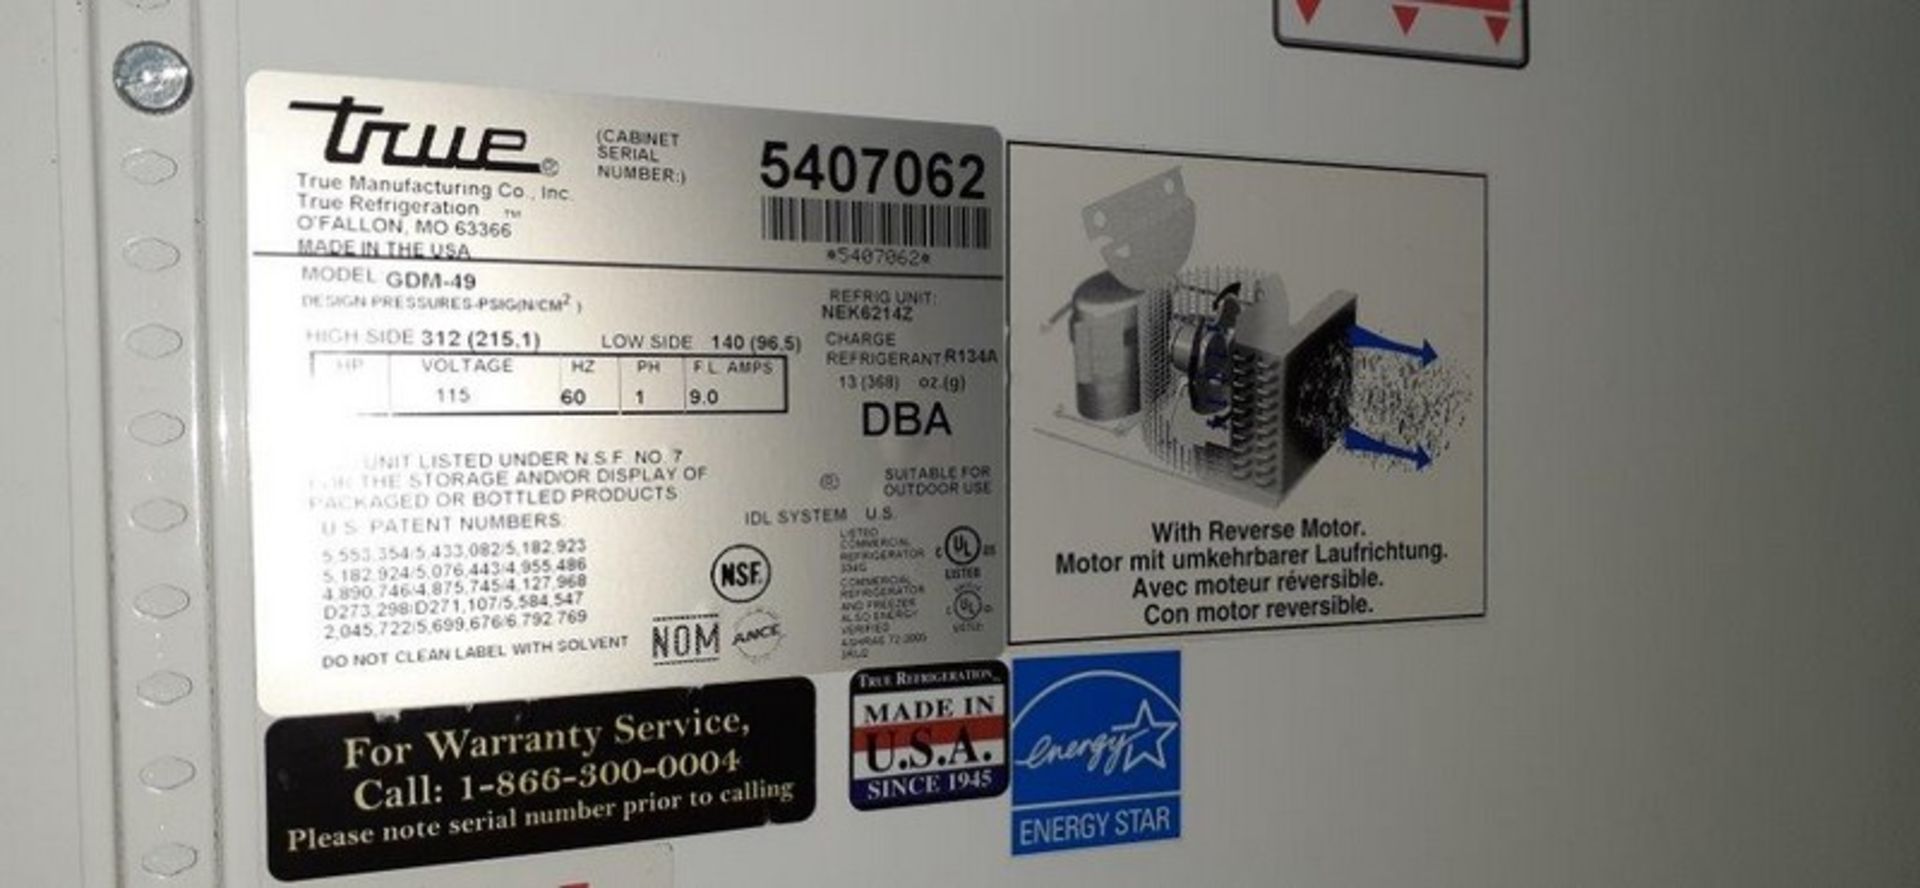 True 2-Door Cooler, Model GDM 49, S/N 5407062 (Located Hicksville, OH) - Image 2 of 2